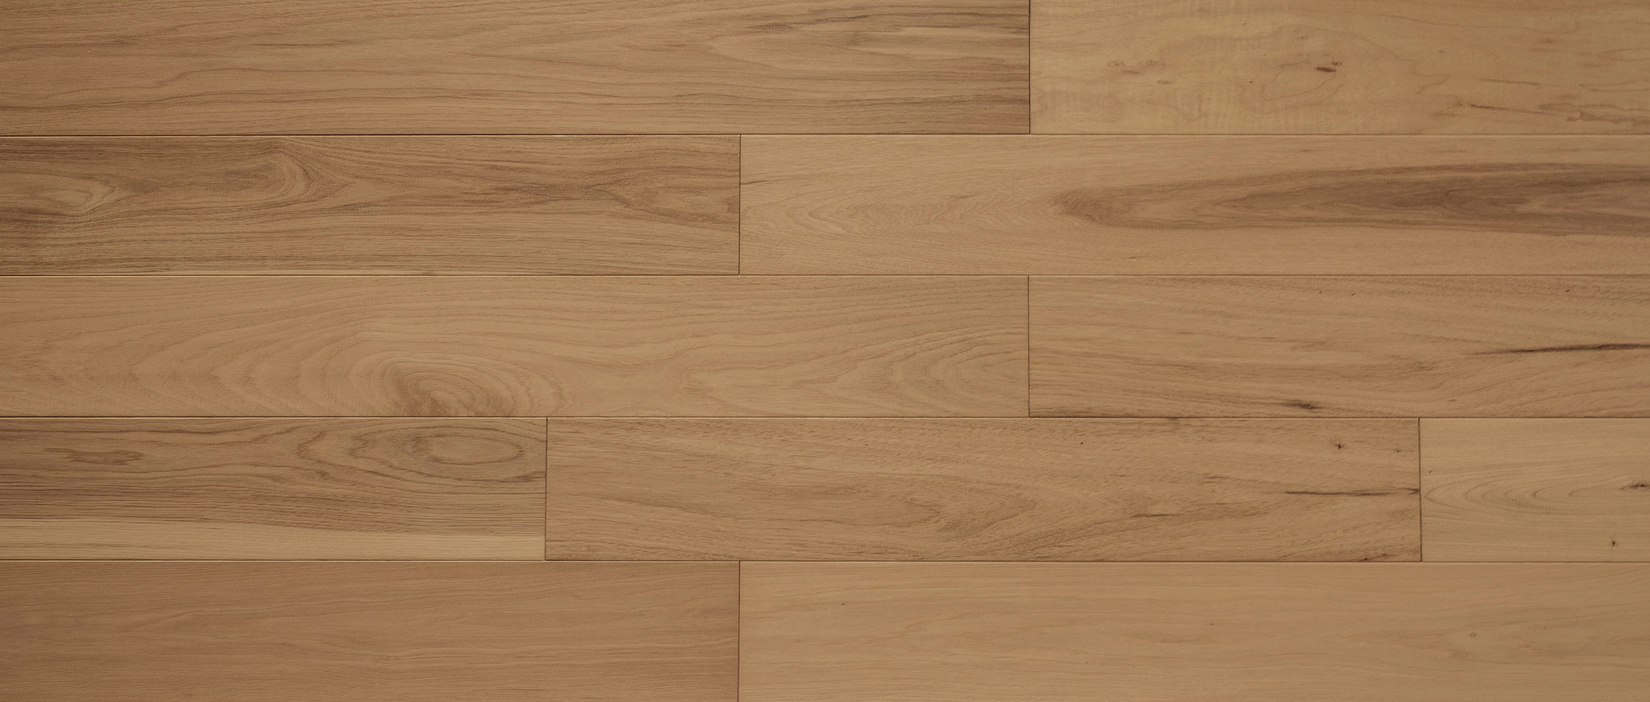 Grandeur Flooring (NATURAL) product 